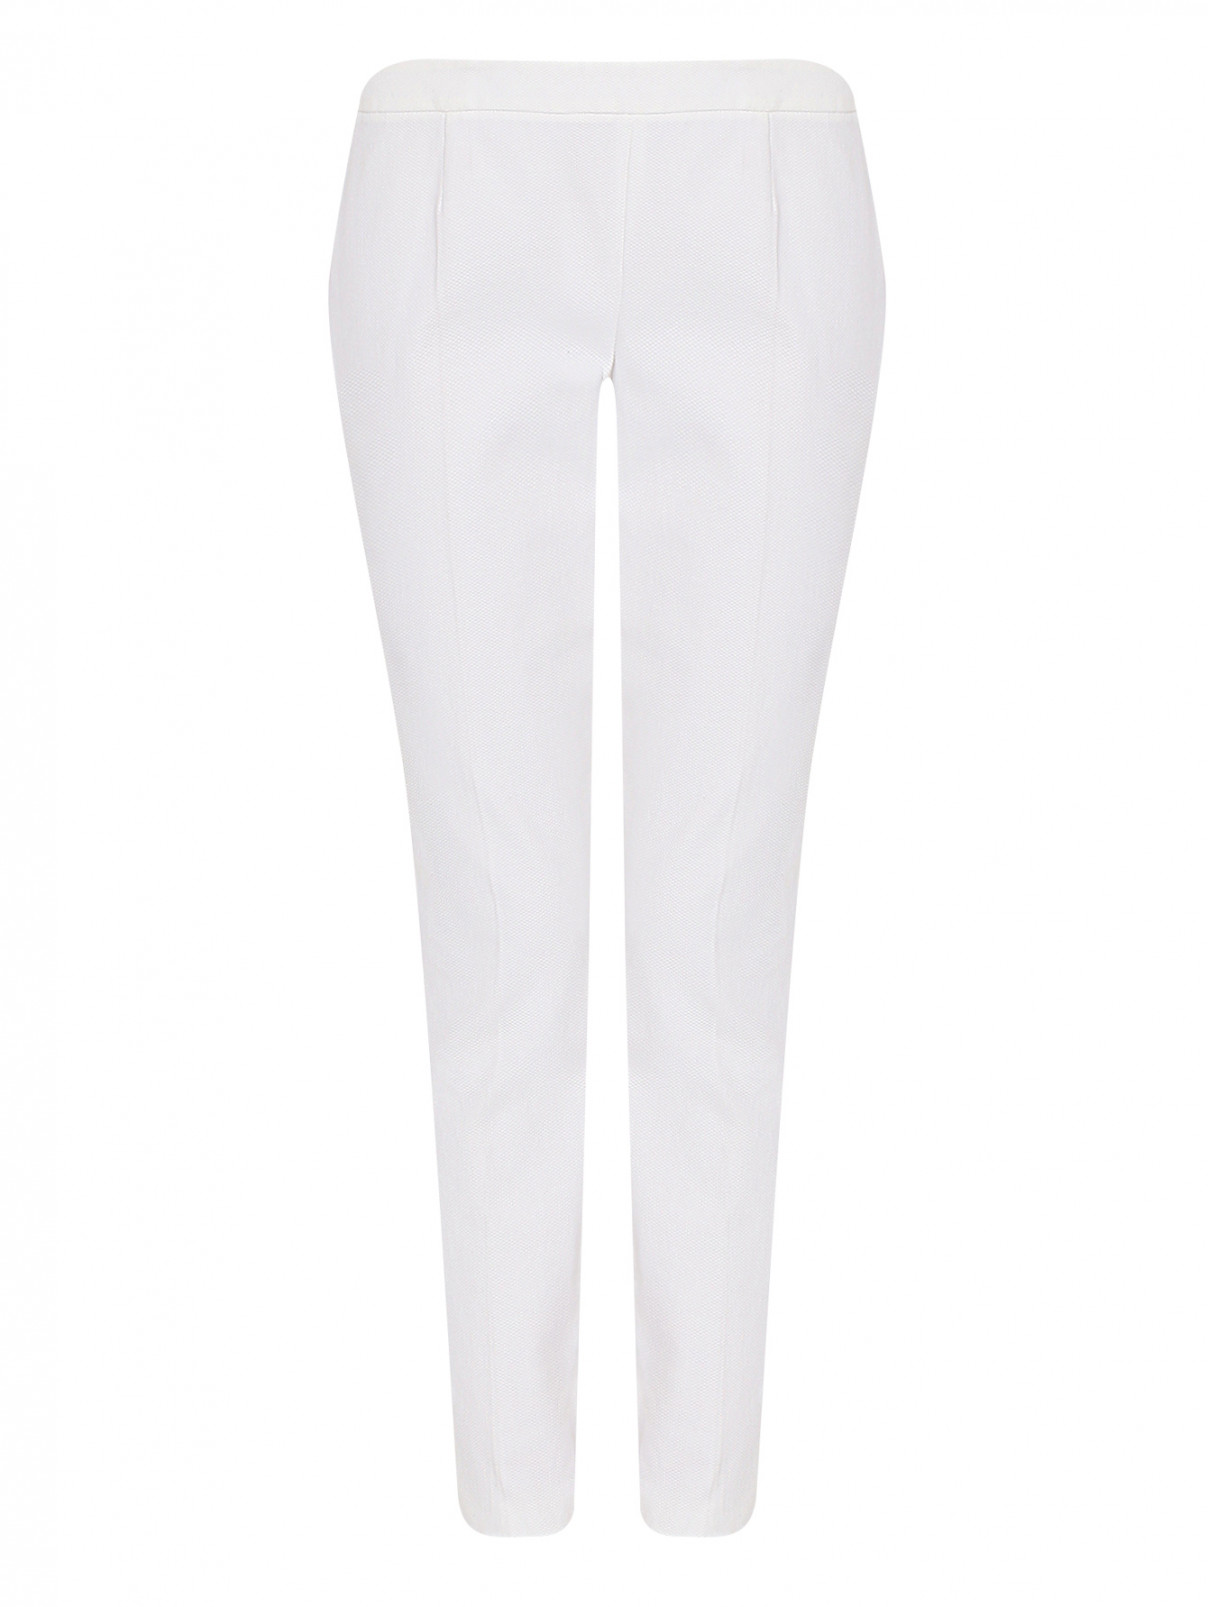 Укороченные брюки из хлопка Luisa Spagnoli  –  Общий вид  – Цвет:  Белый